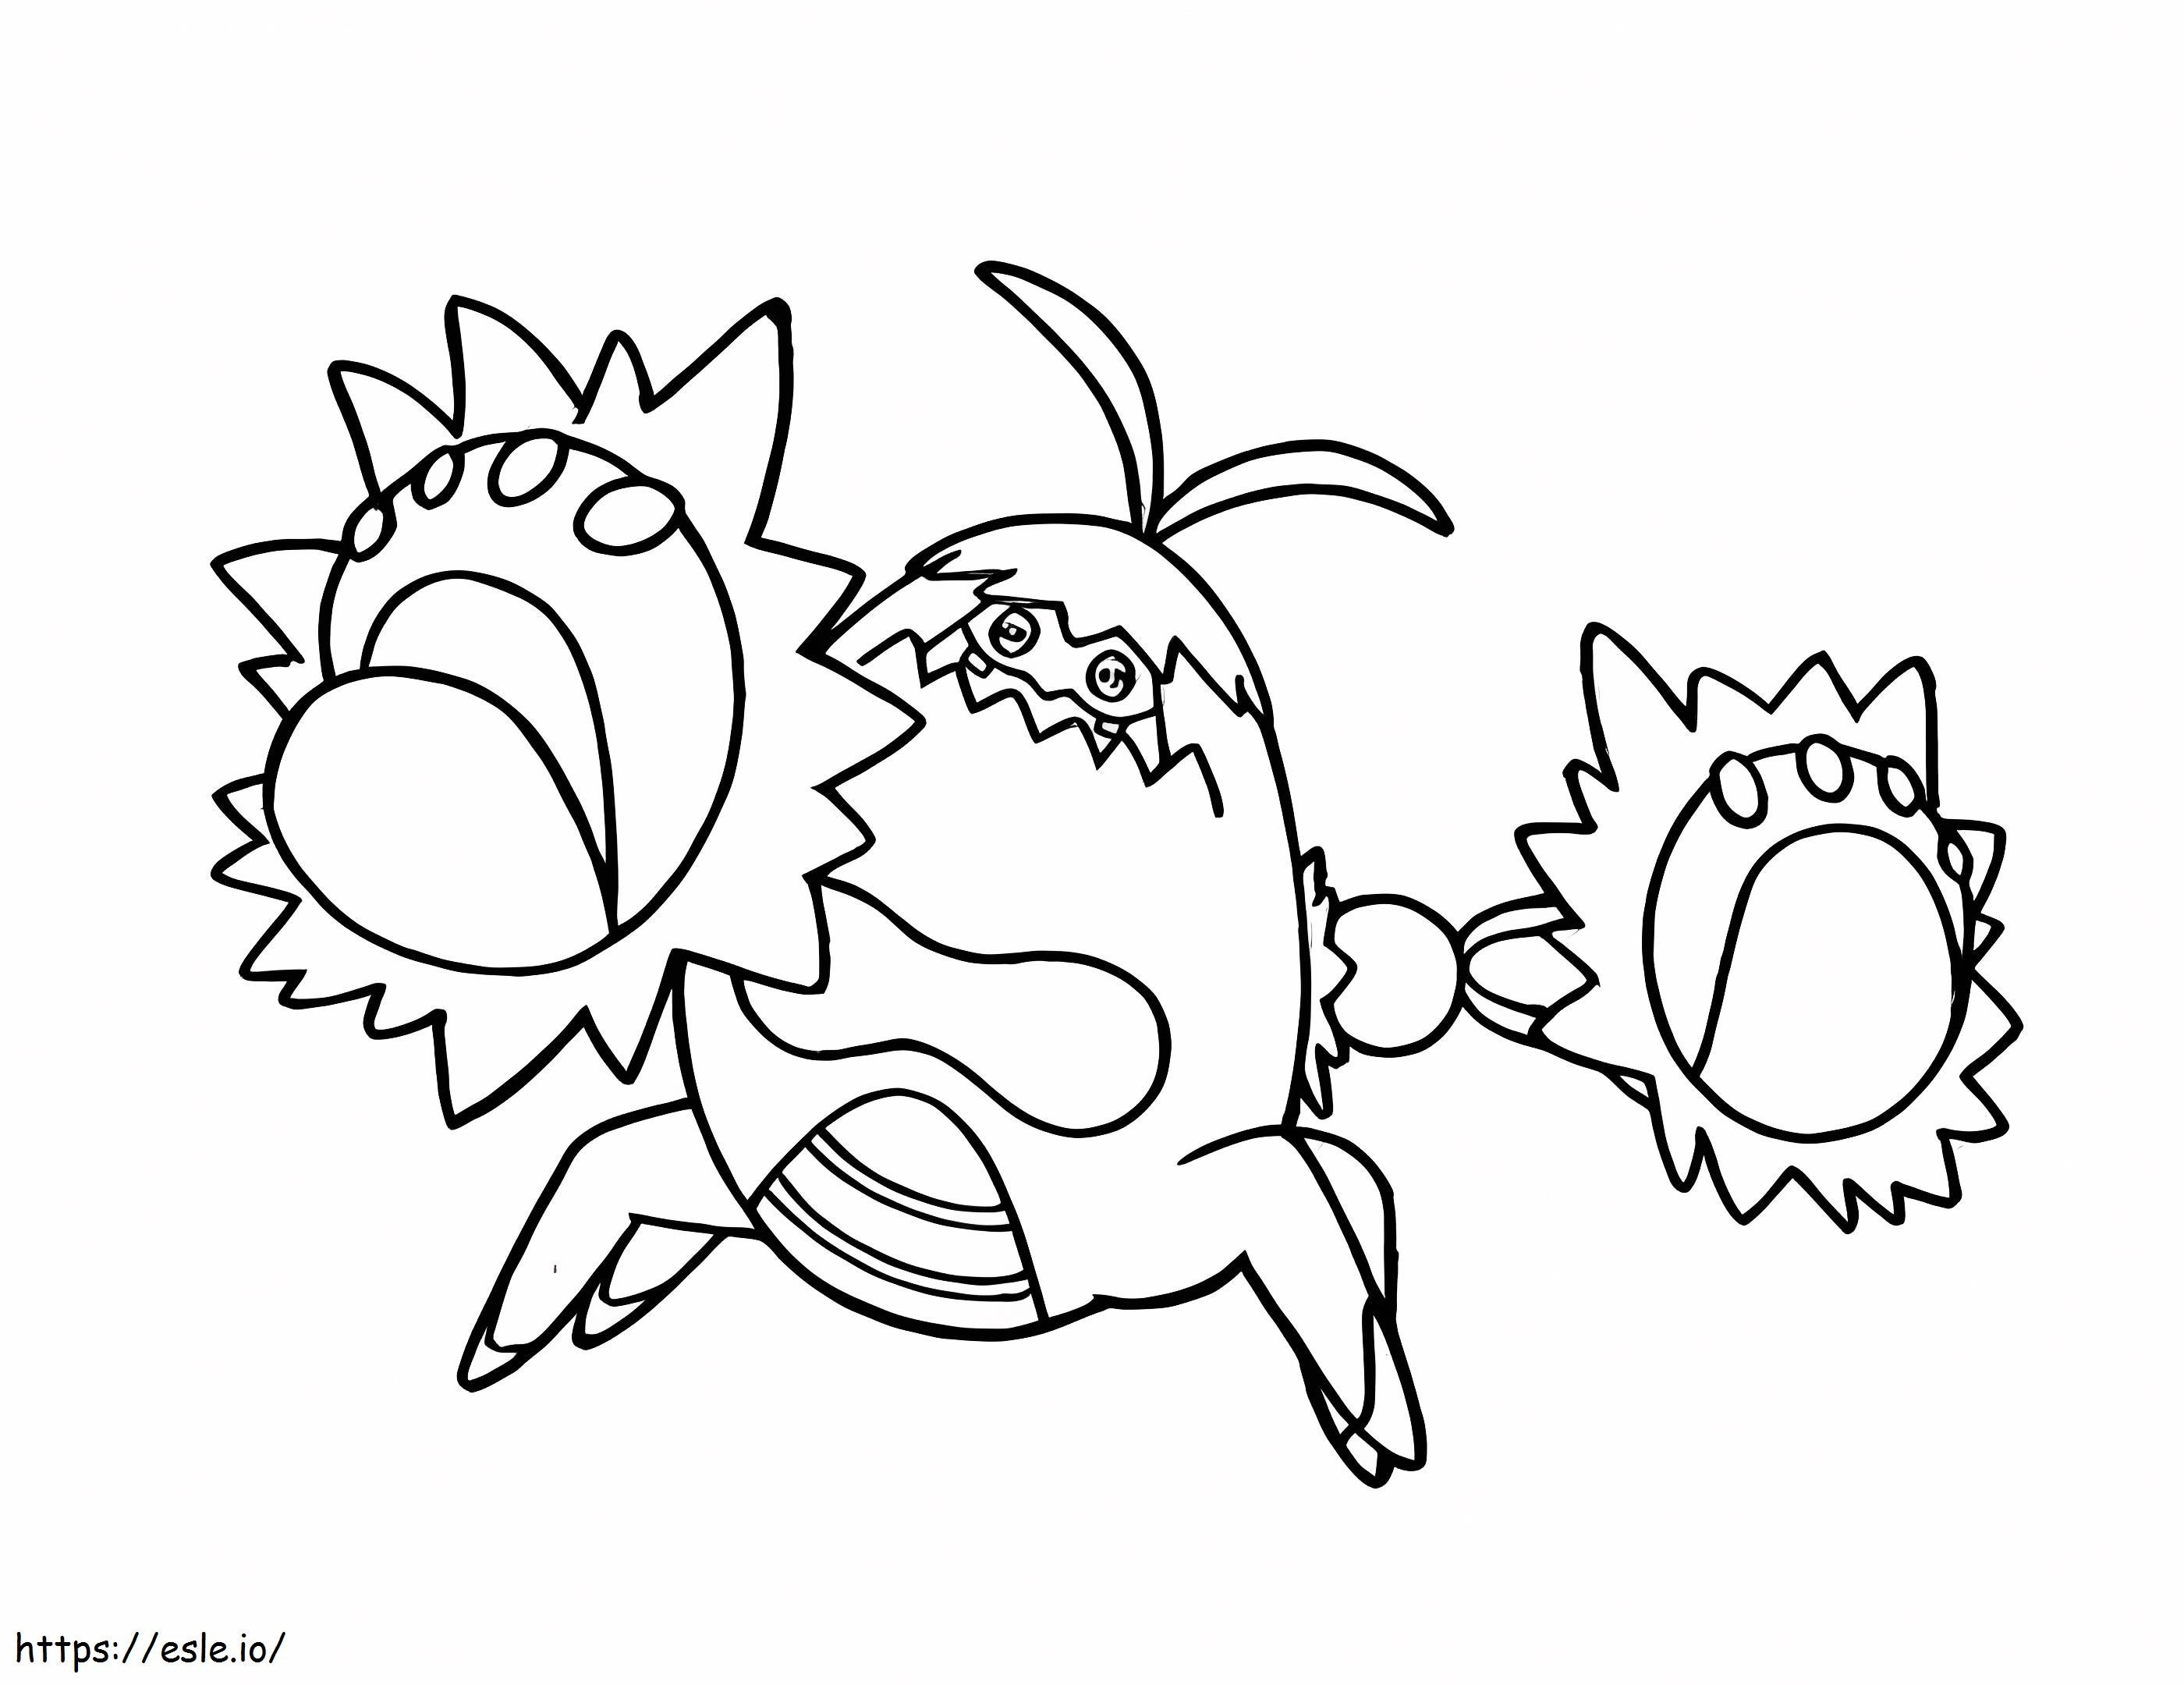 Coloriage Pokémon Crabominable 2 à imprimer dessin